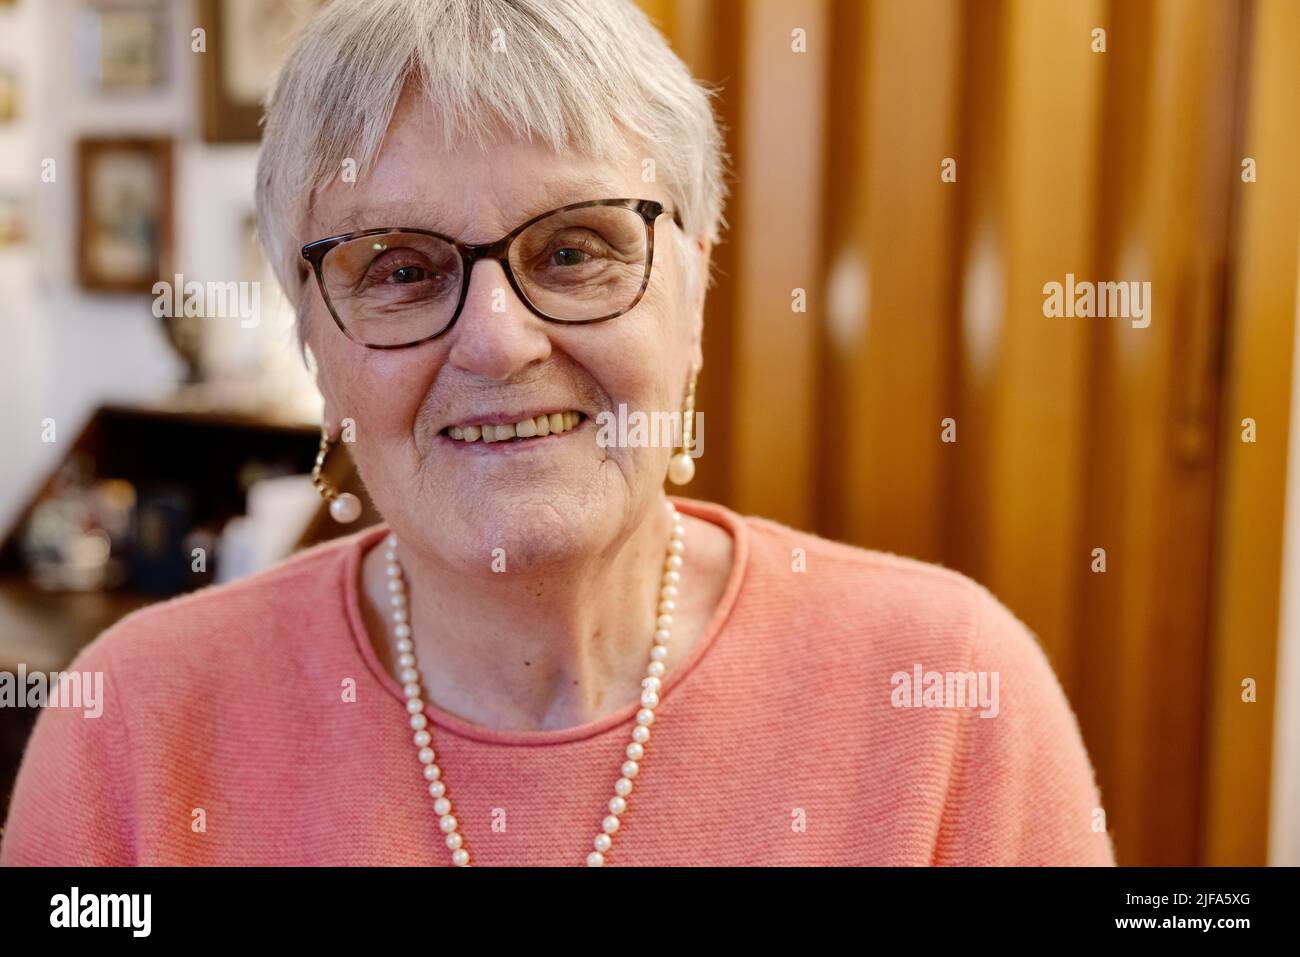 Femme âgée avec des lunettes rit dans l'appareil photo, portrait, Bocholt, Rhénanie-du-Nord-Westphalie, Allemagne Banque D'Images